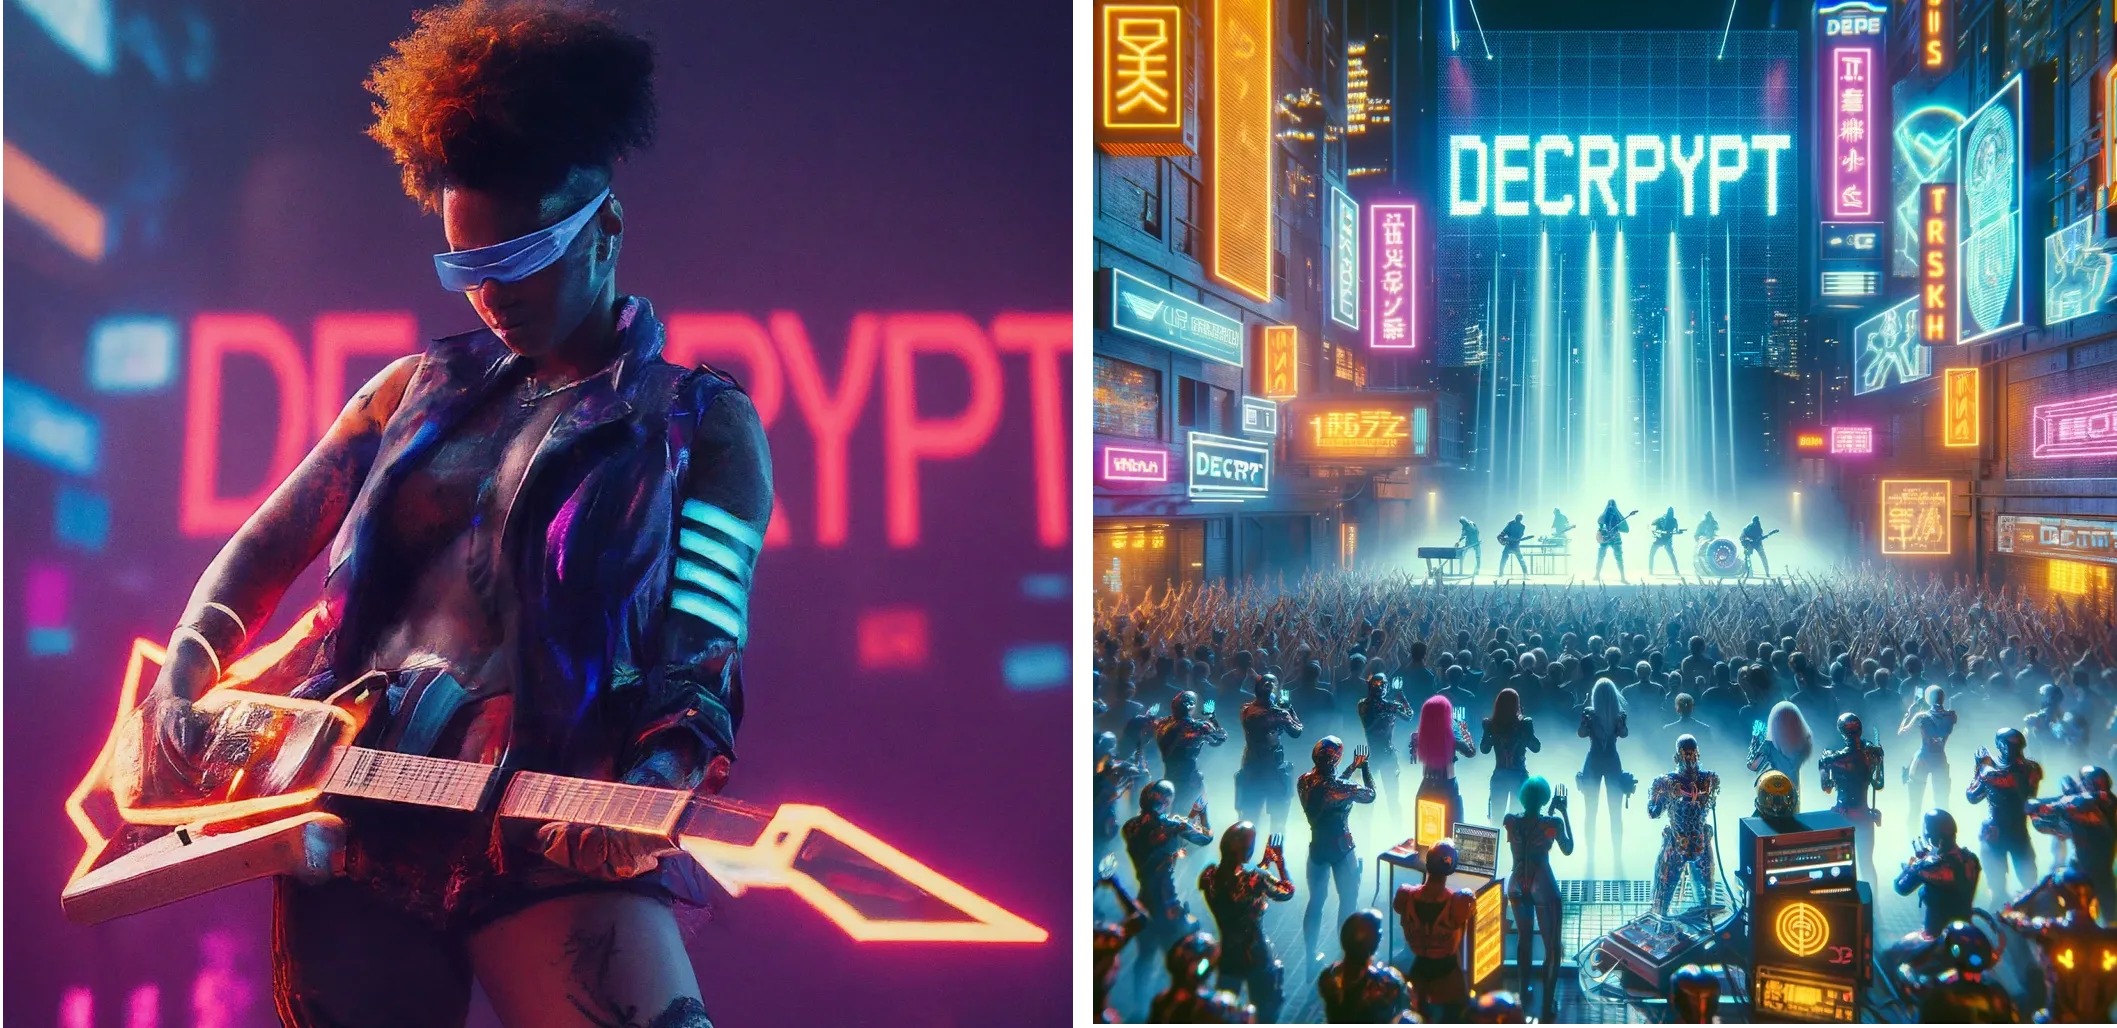 هنرمند آینده نگر سایبرپانک در حال اجرا روی صحنه با کلمه "DECRYPT" در نورهای نئون در پس زمینه. Gemini (چپ) در مقابل ChatGPT Plus (راست)